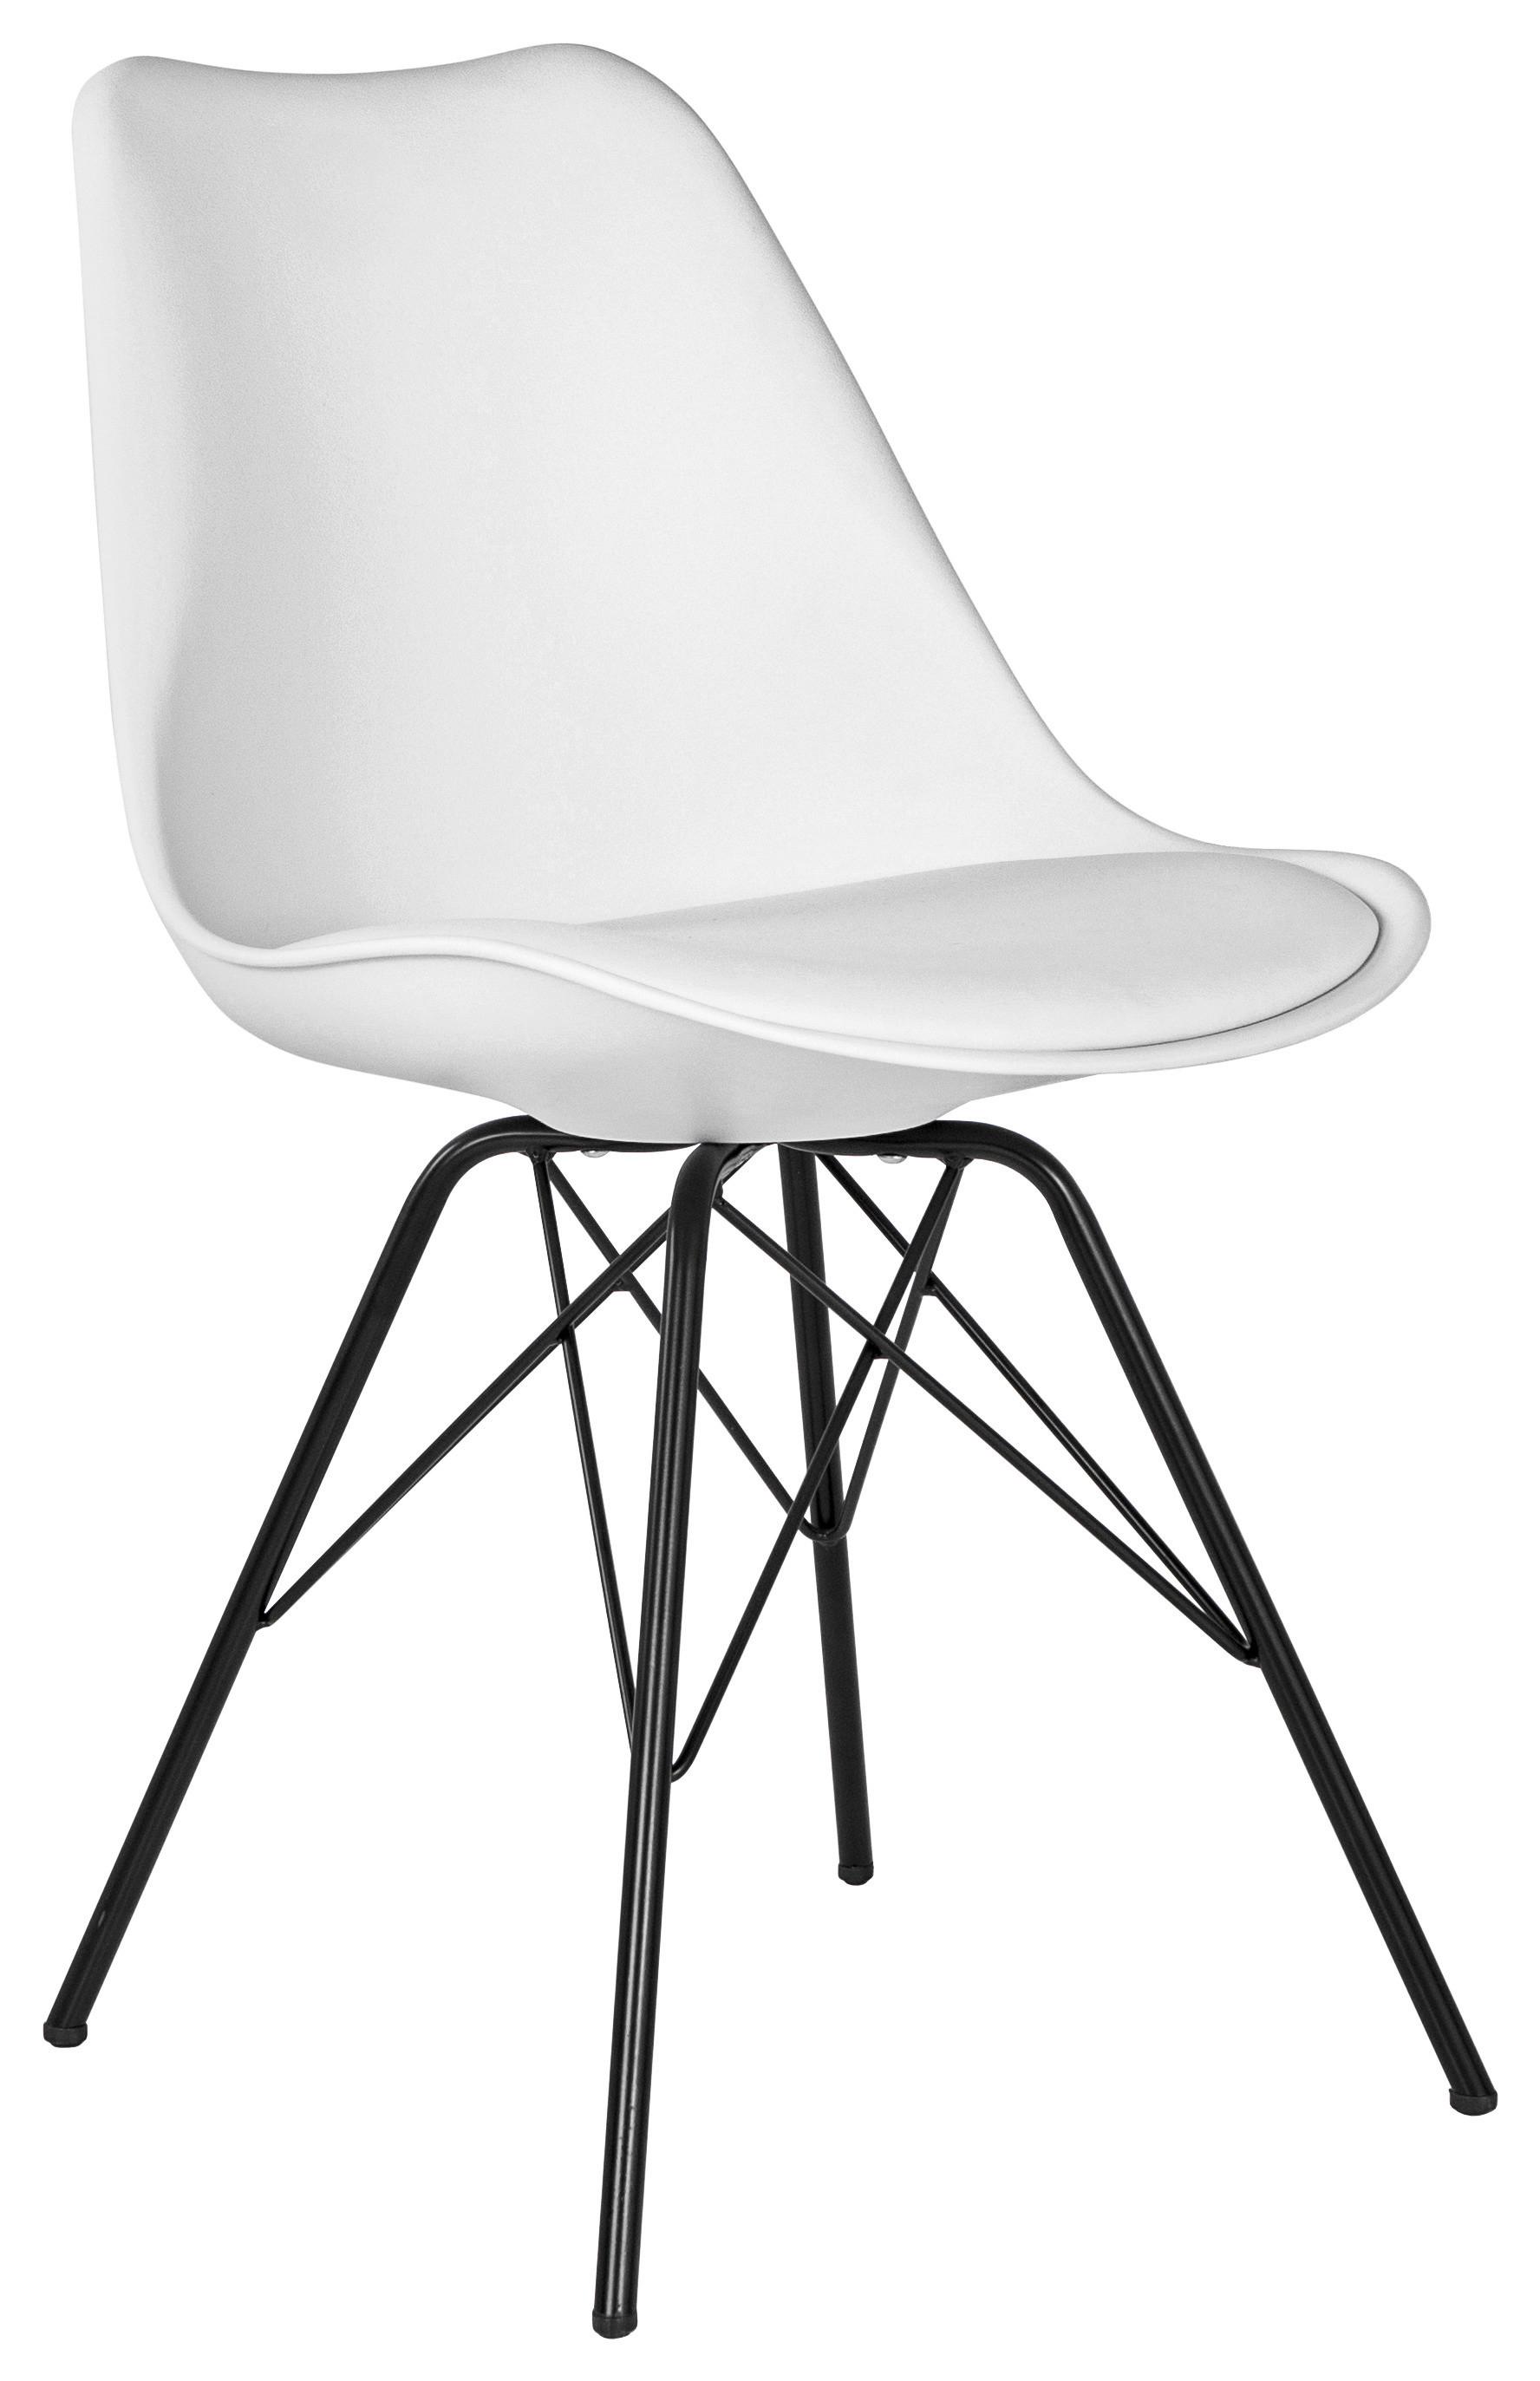 Stuhl in Weiß - Schwarz/Weiß, MODERN, Kunststoff/Textil (55,5/86/48cm) - Based